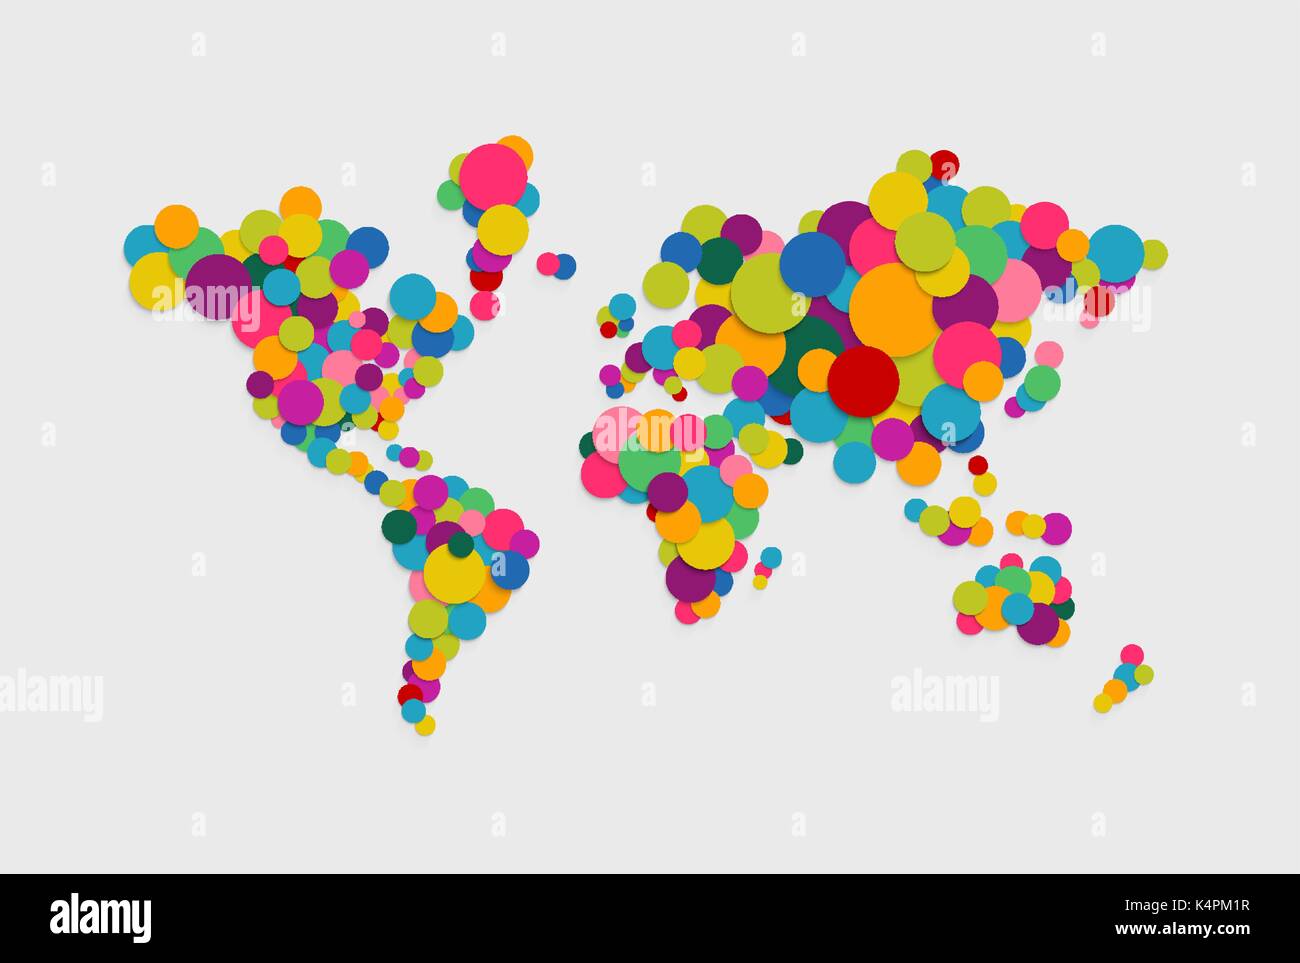 Farbenfrohe abstrakte Welt Karte Konzept Abbildung: Lebendige multicolor Kreise im 3d-Papier schneiden Stil gemacht. EPS 10 Vektor. Stock Vektor